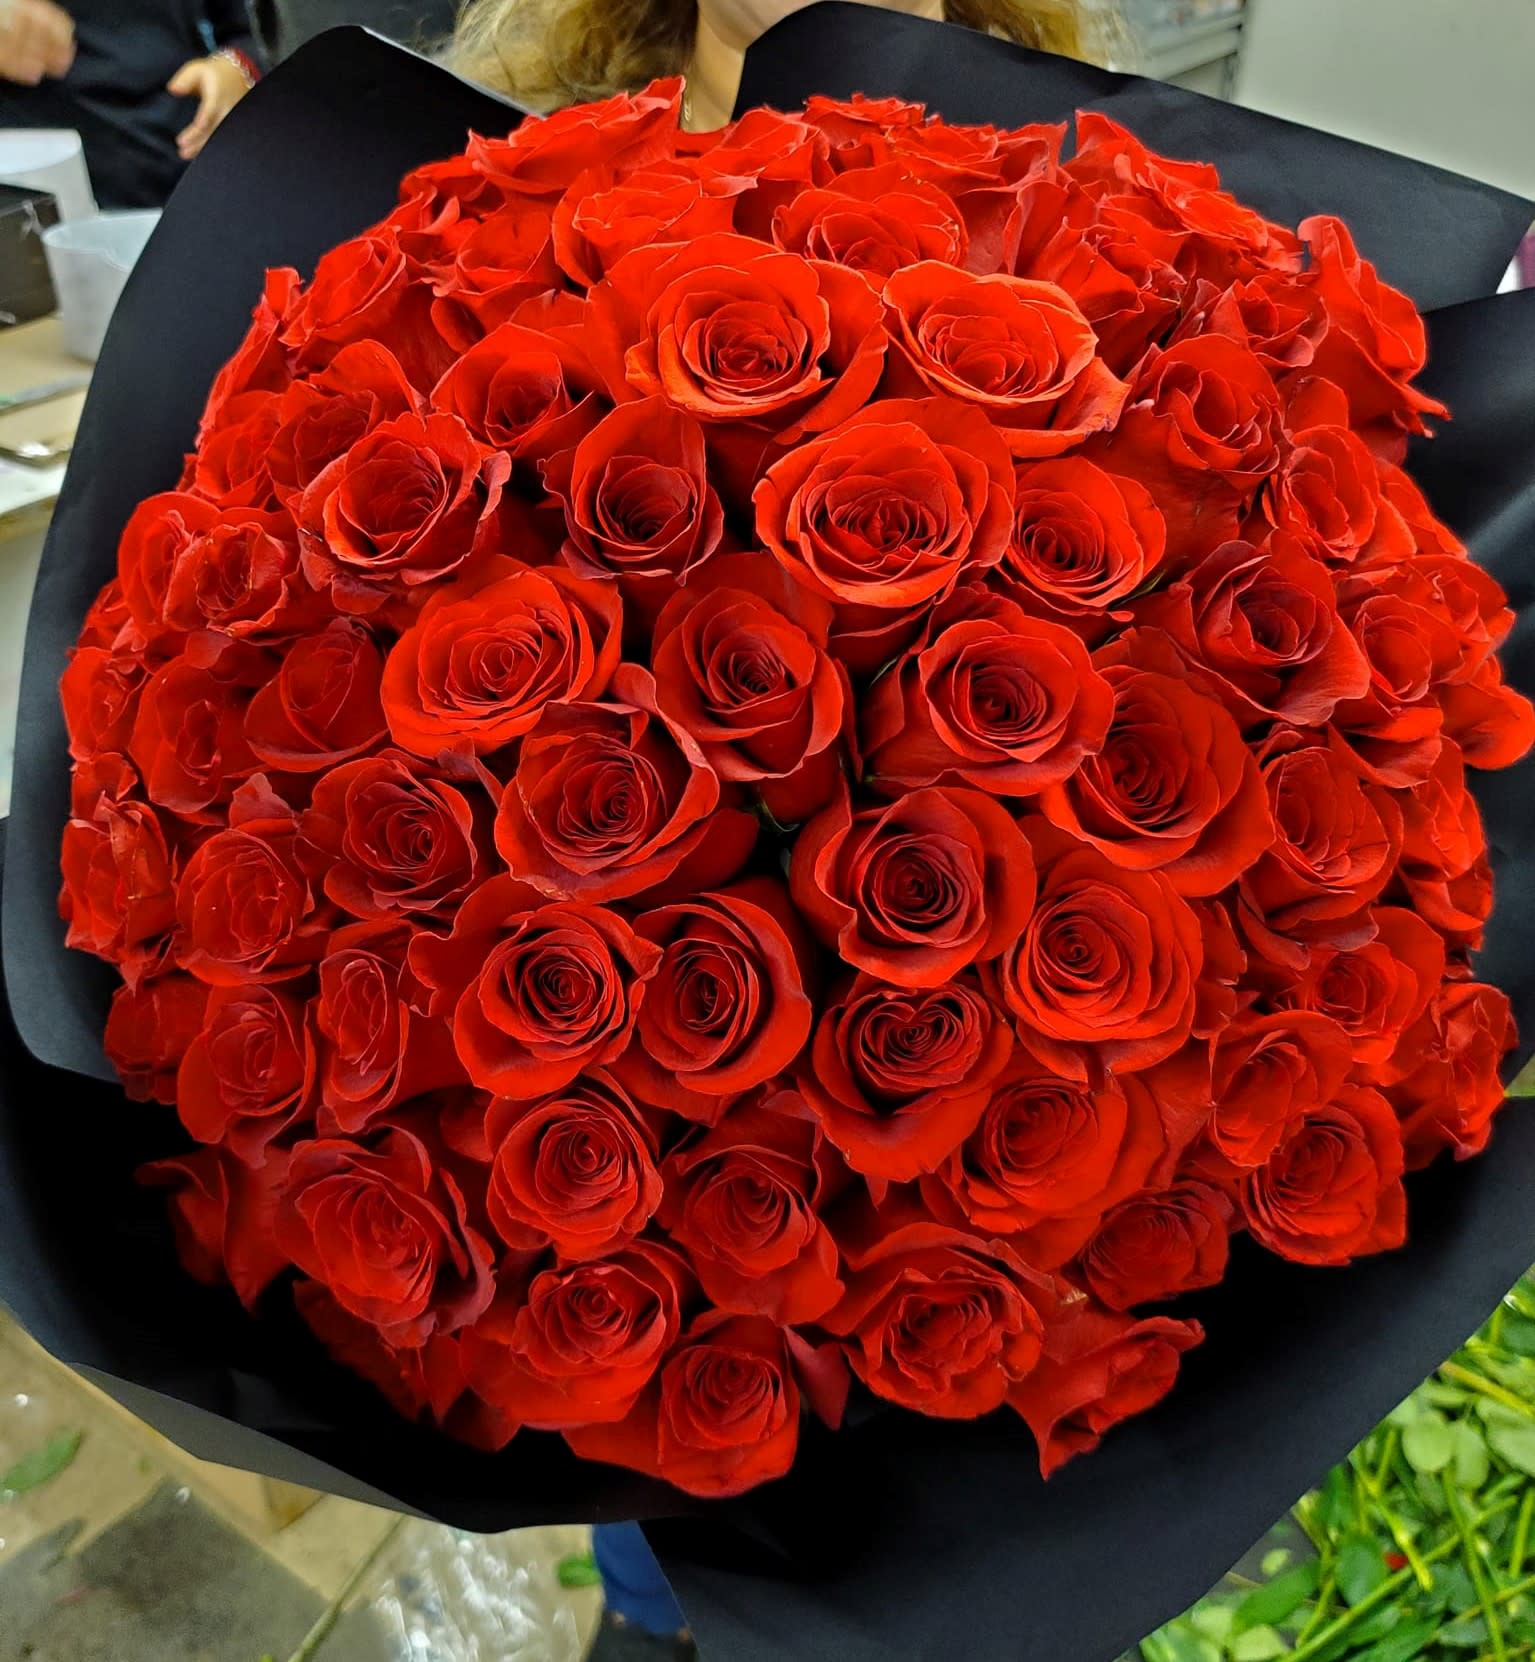 RED ROSES BOUQUET - Bouquet Of Red Roses, bouquet rose